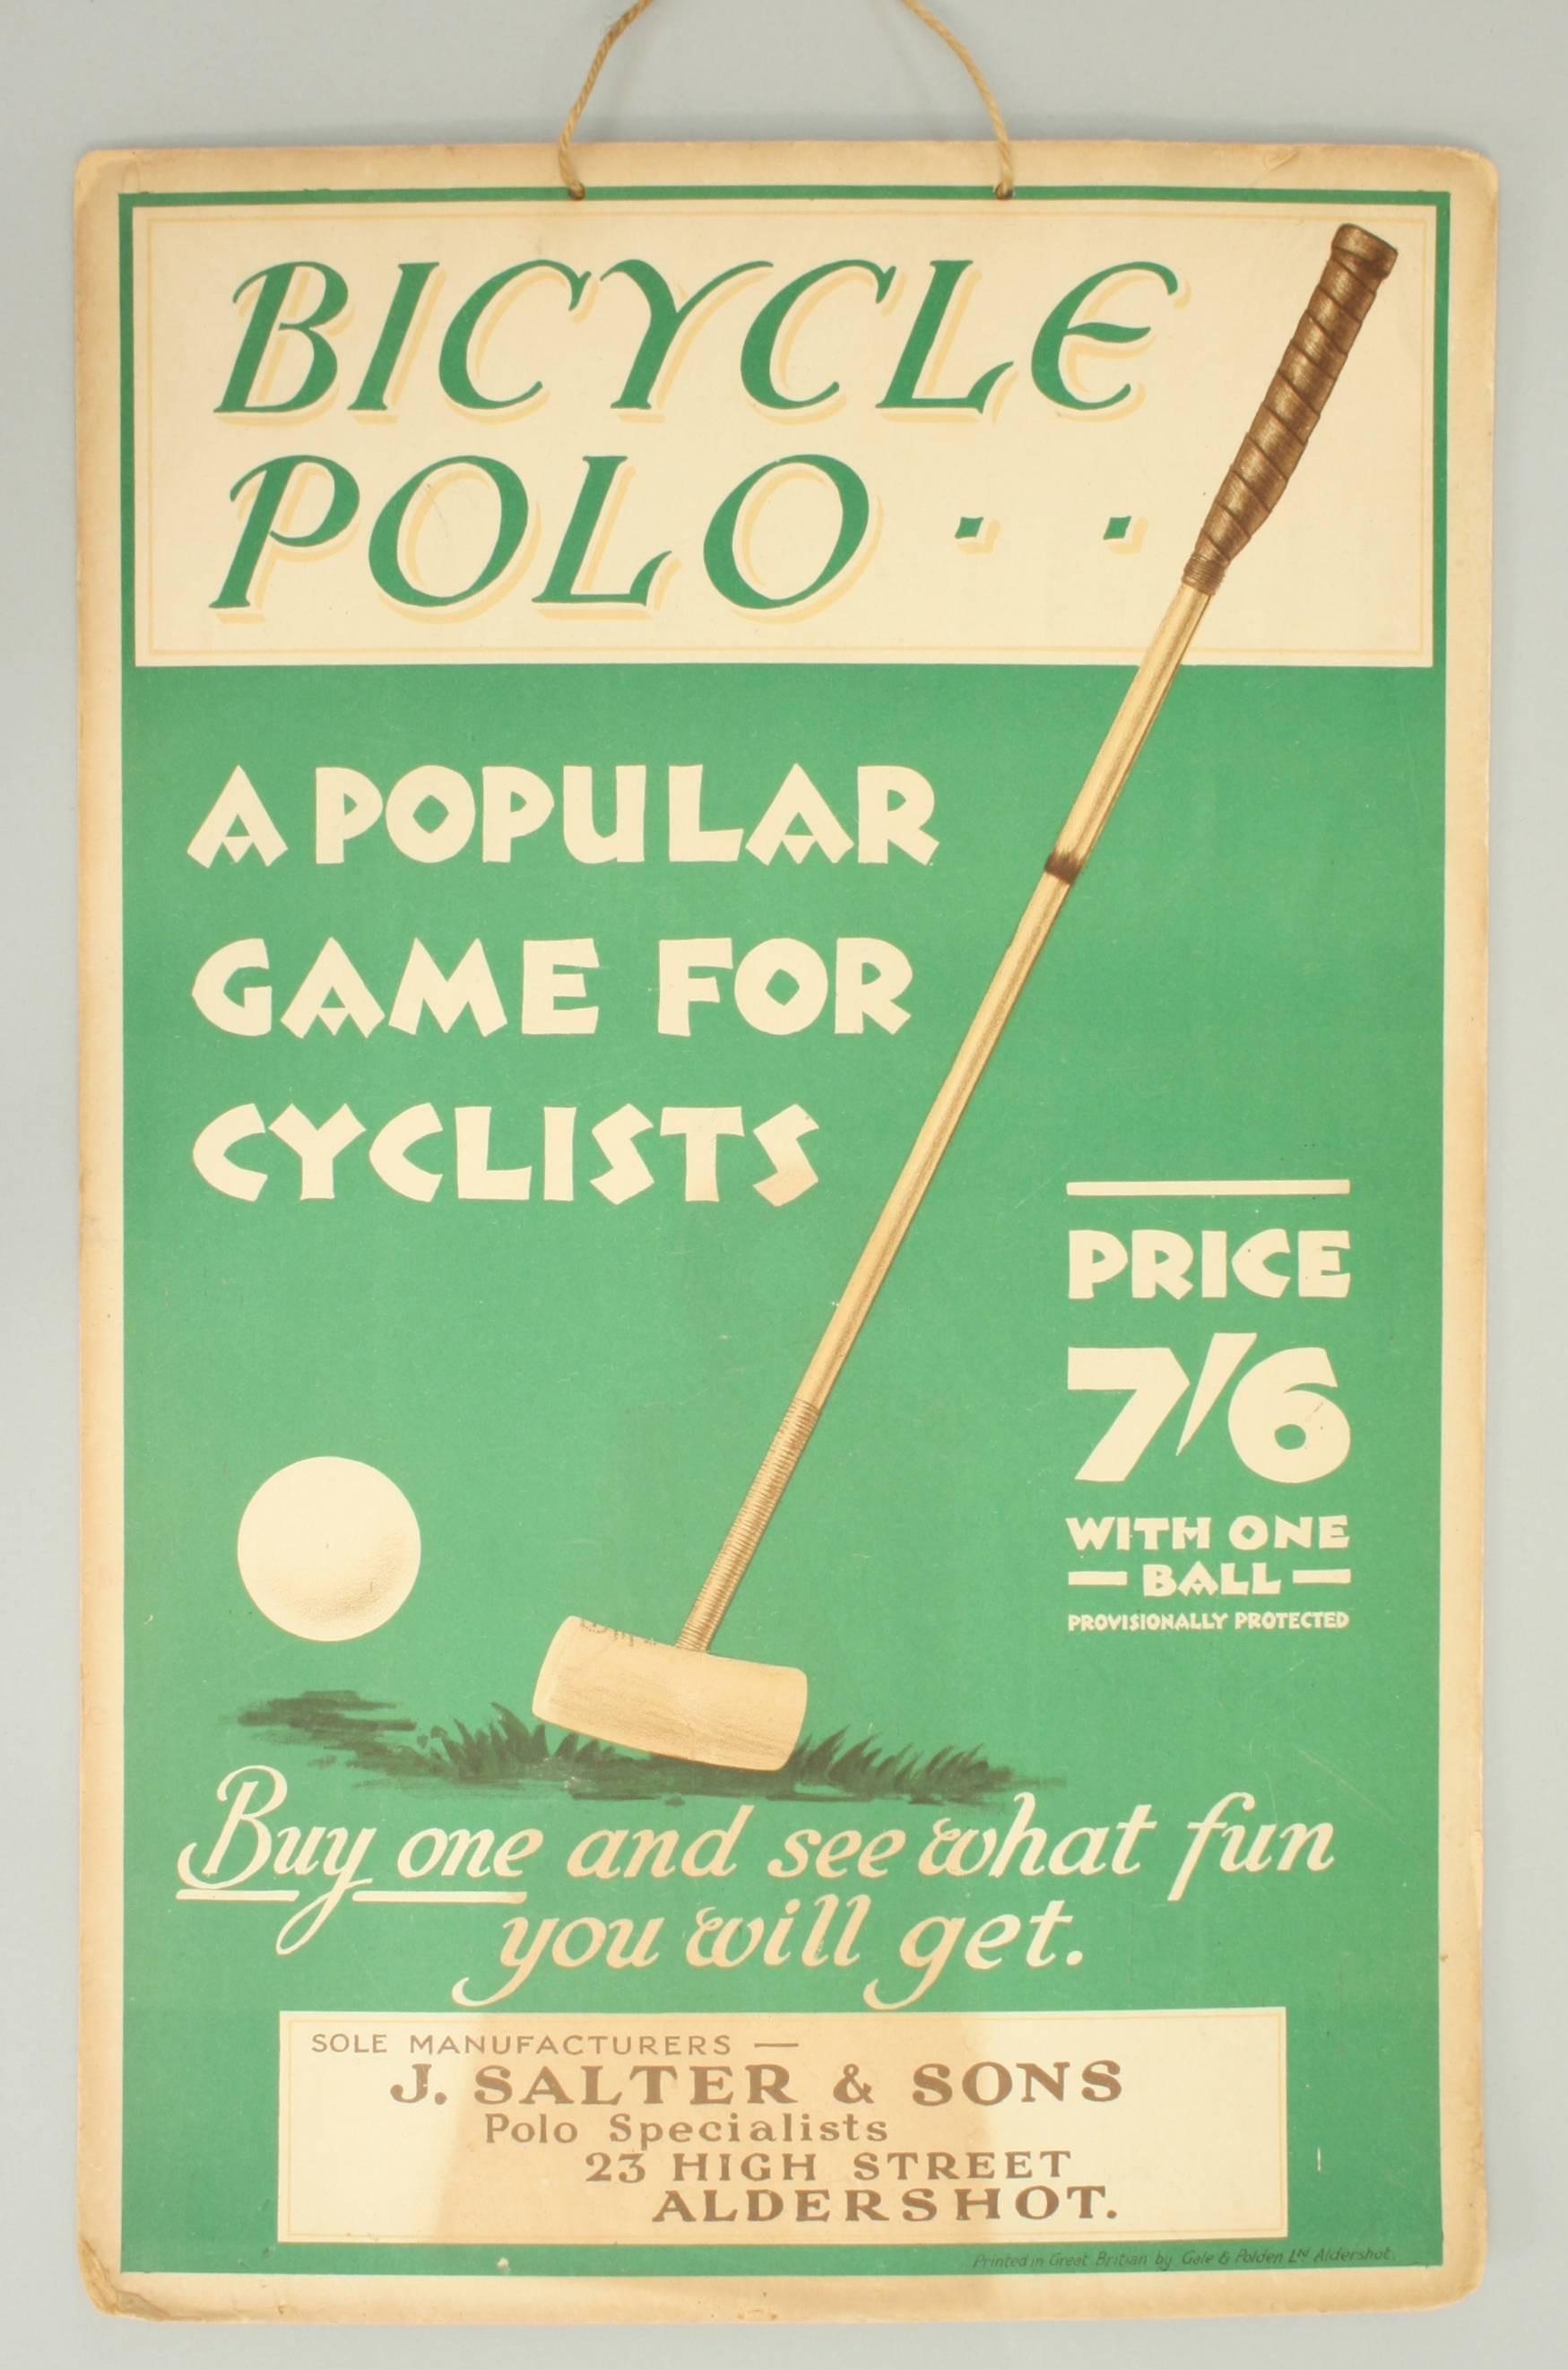 polo sticks for sale